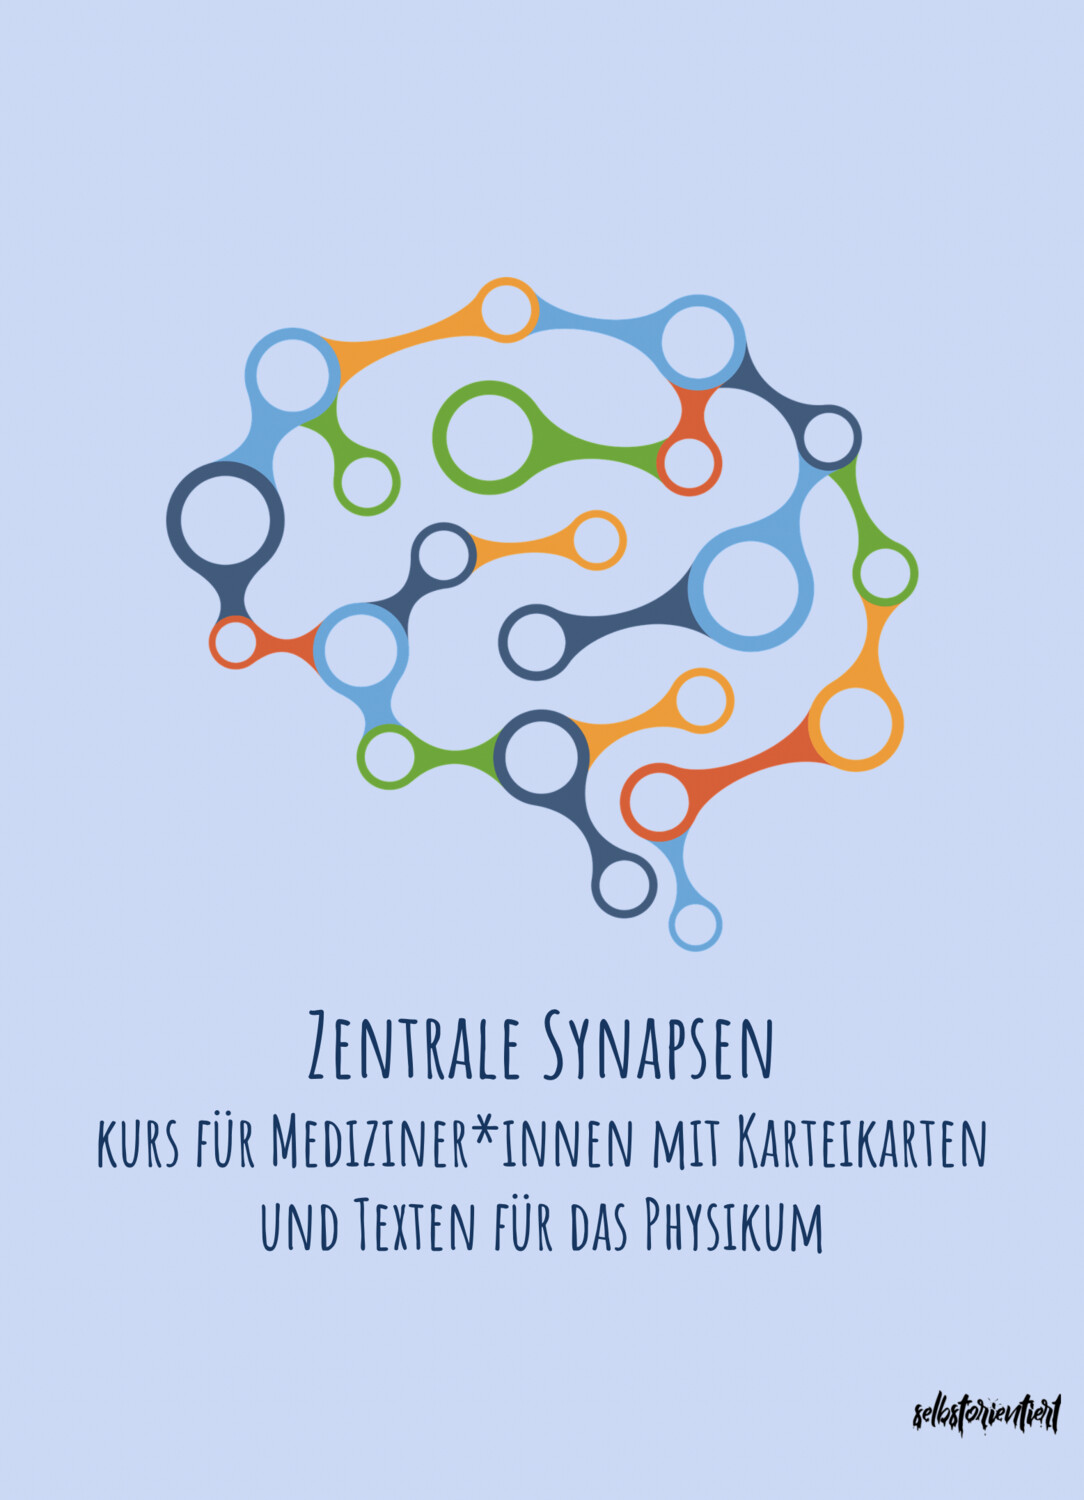 Zentrale Synapsen - Kurs mit Karteikarten & Texten